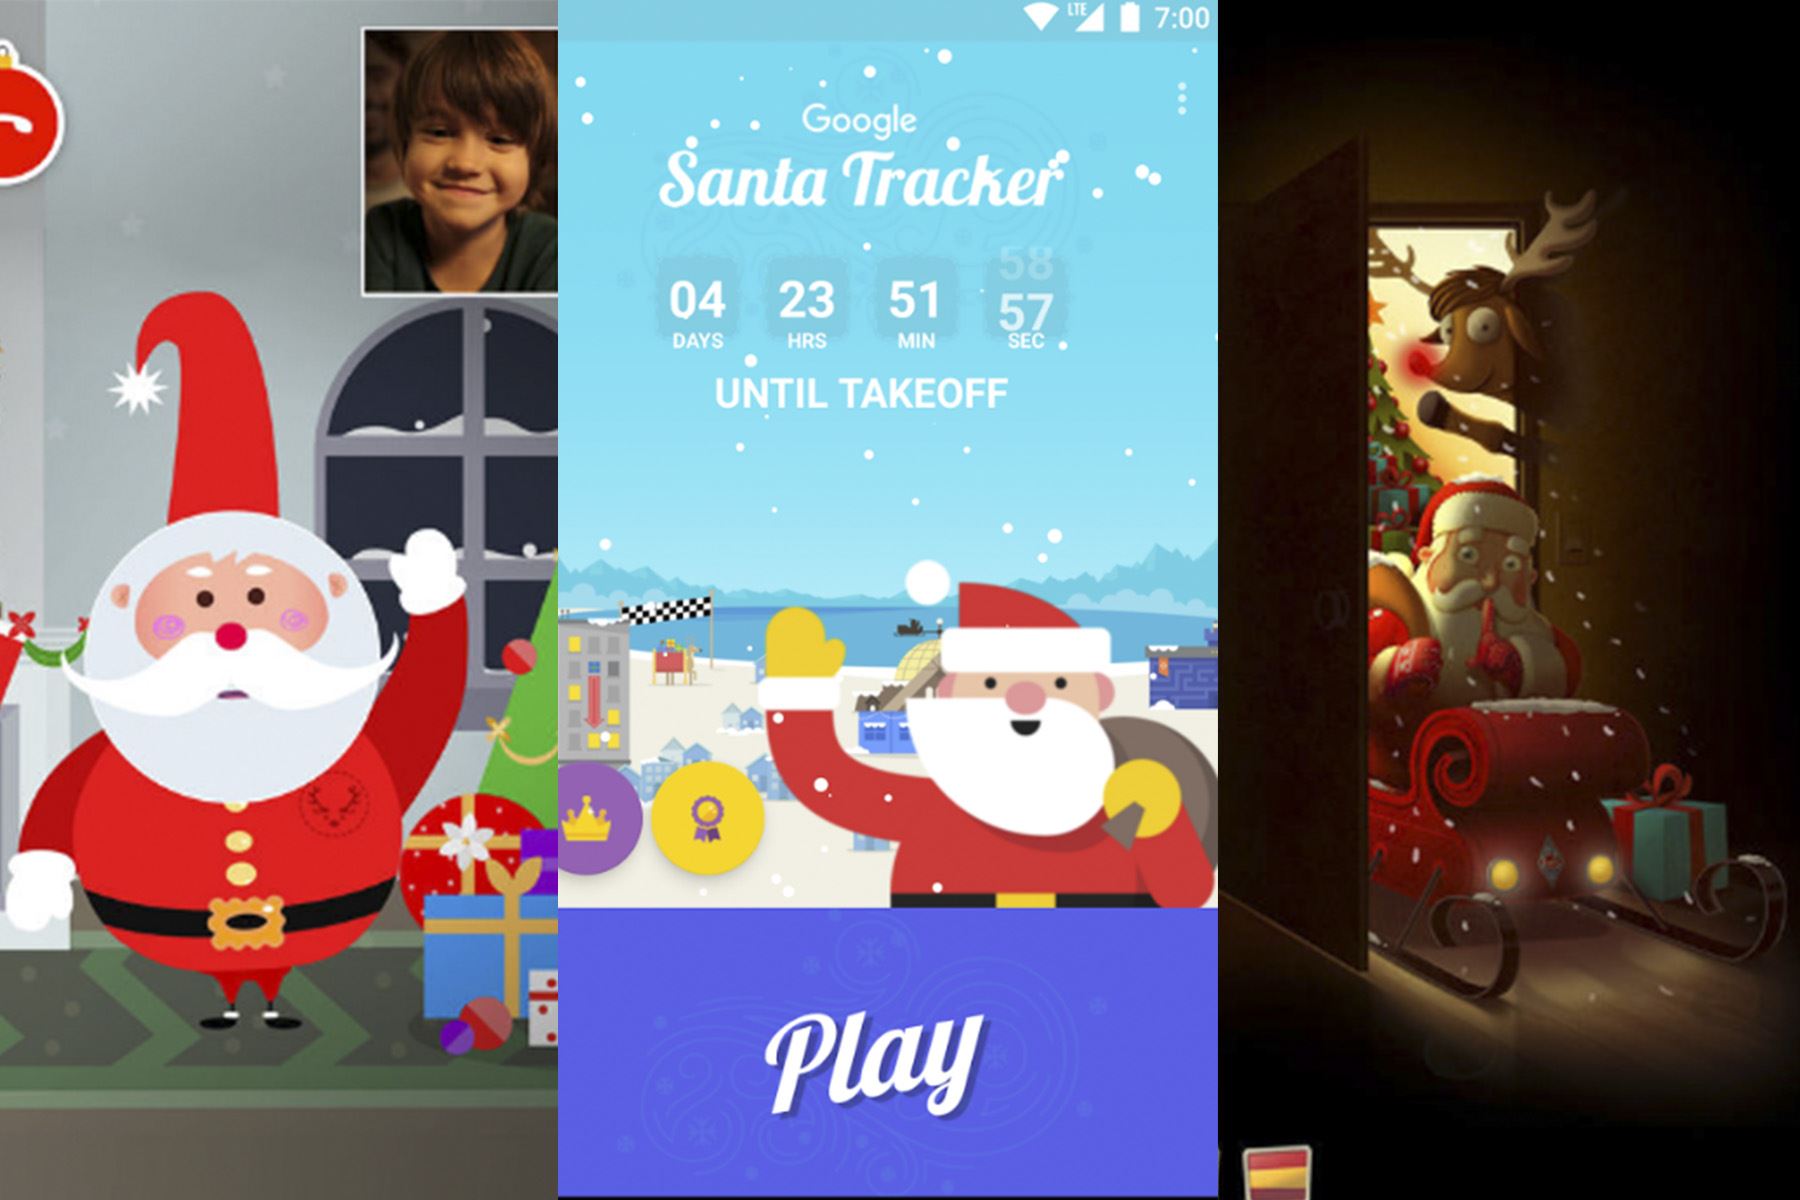 Los aplicativos incluyen melodías, fotos navideñas y el recorrido de Papá Noel en la Nochebuena.